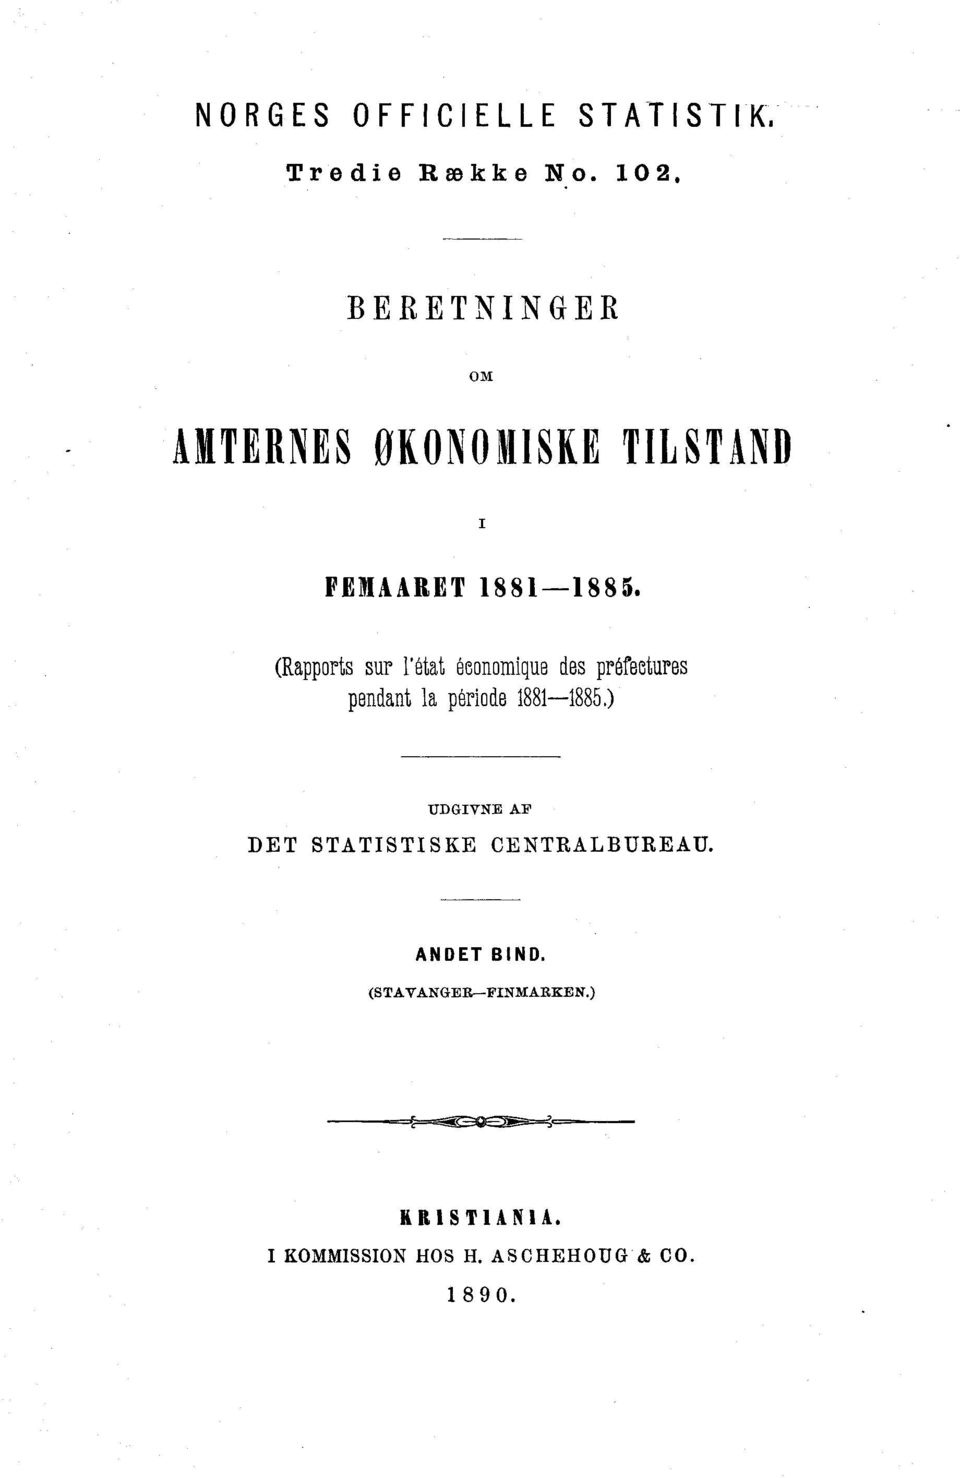 (Rapports sur l'état économique des préfectures pendant la période 1881-1885.